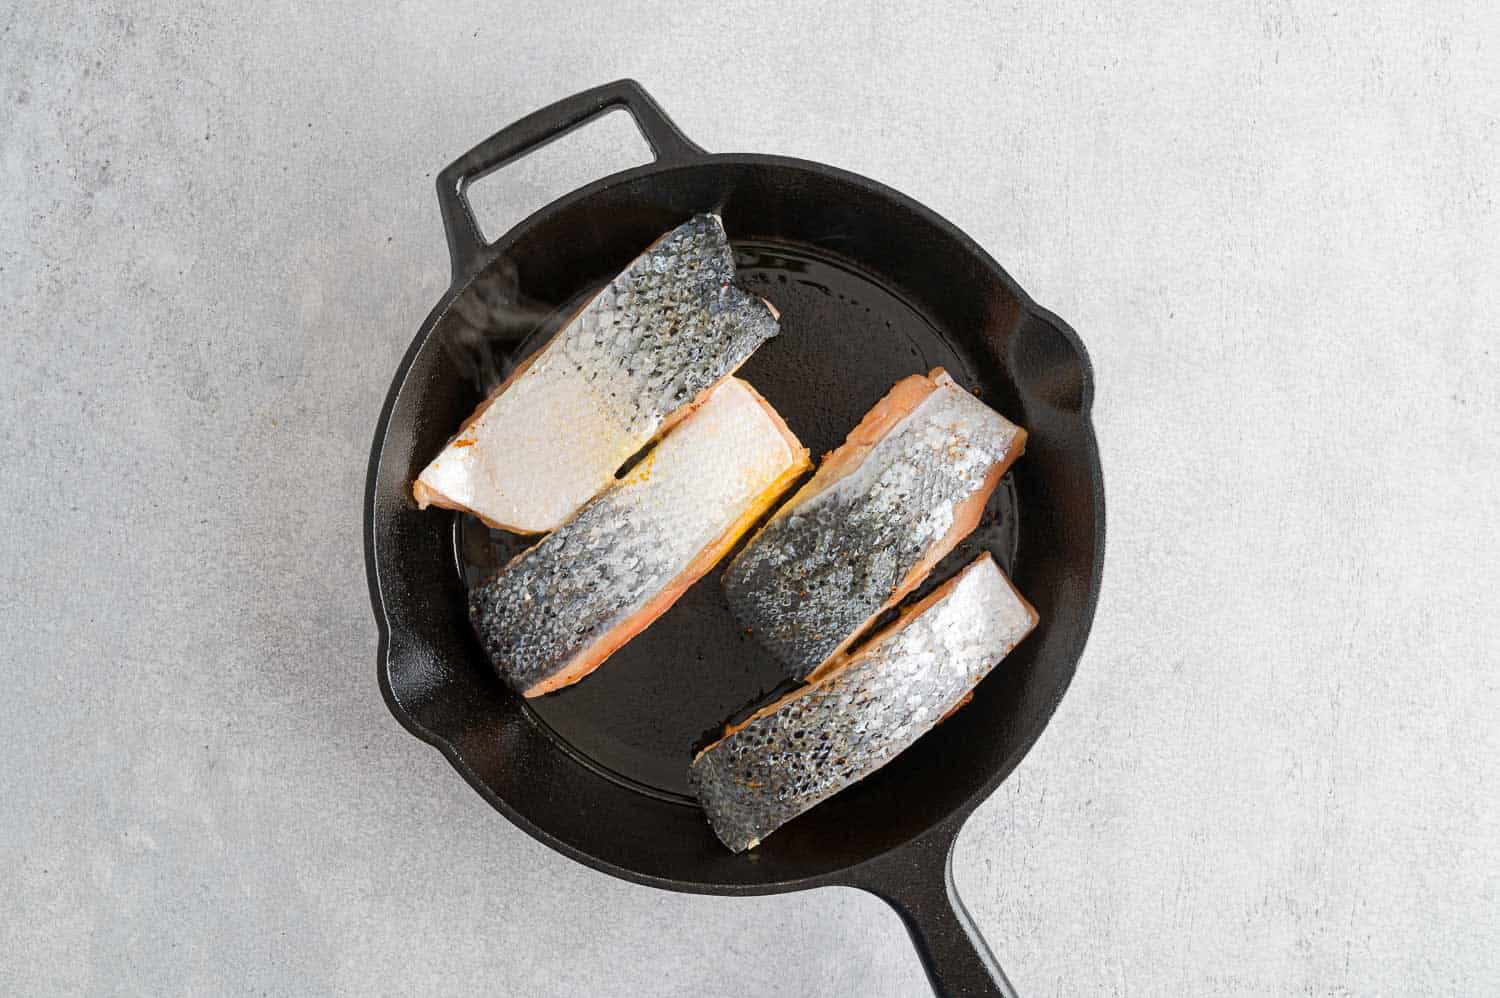 Salmon filets skin side up in a frying pan.